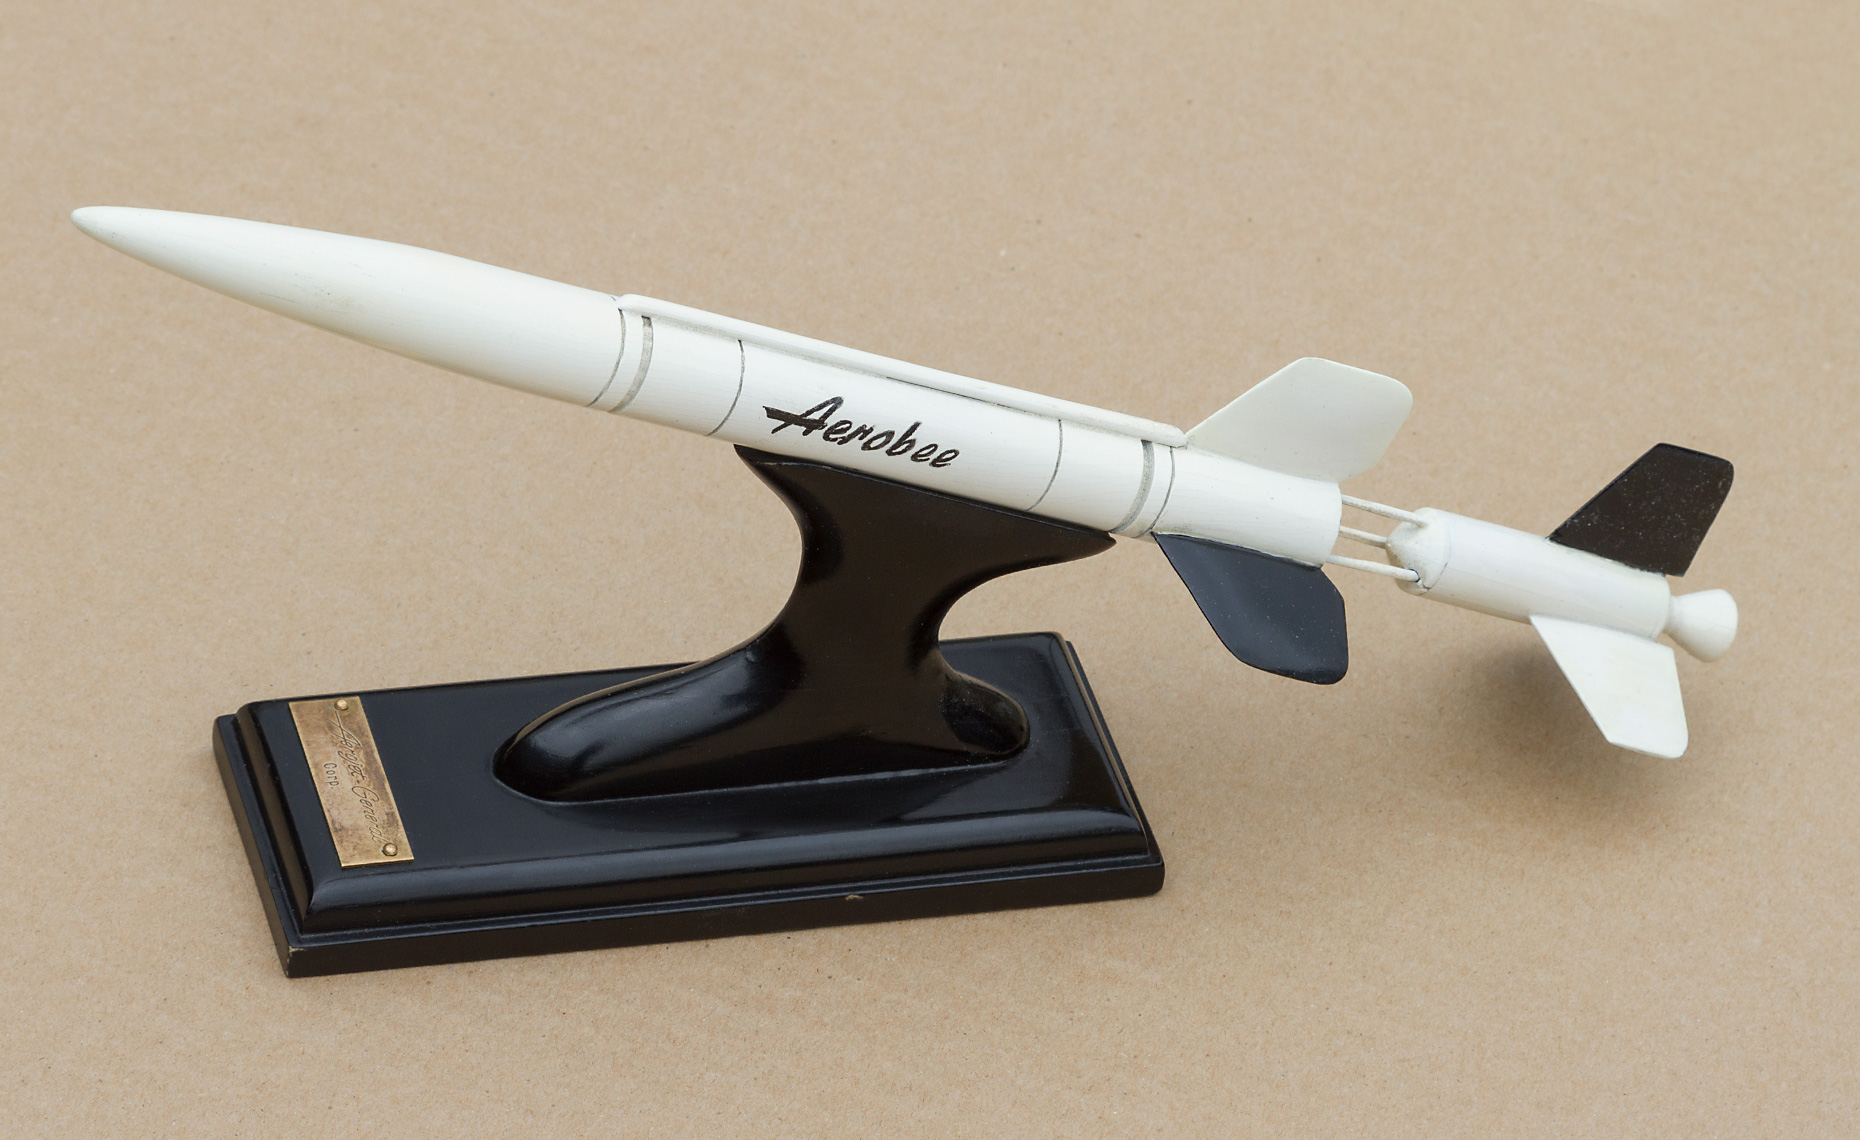 Aerobee X-8 model missile